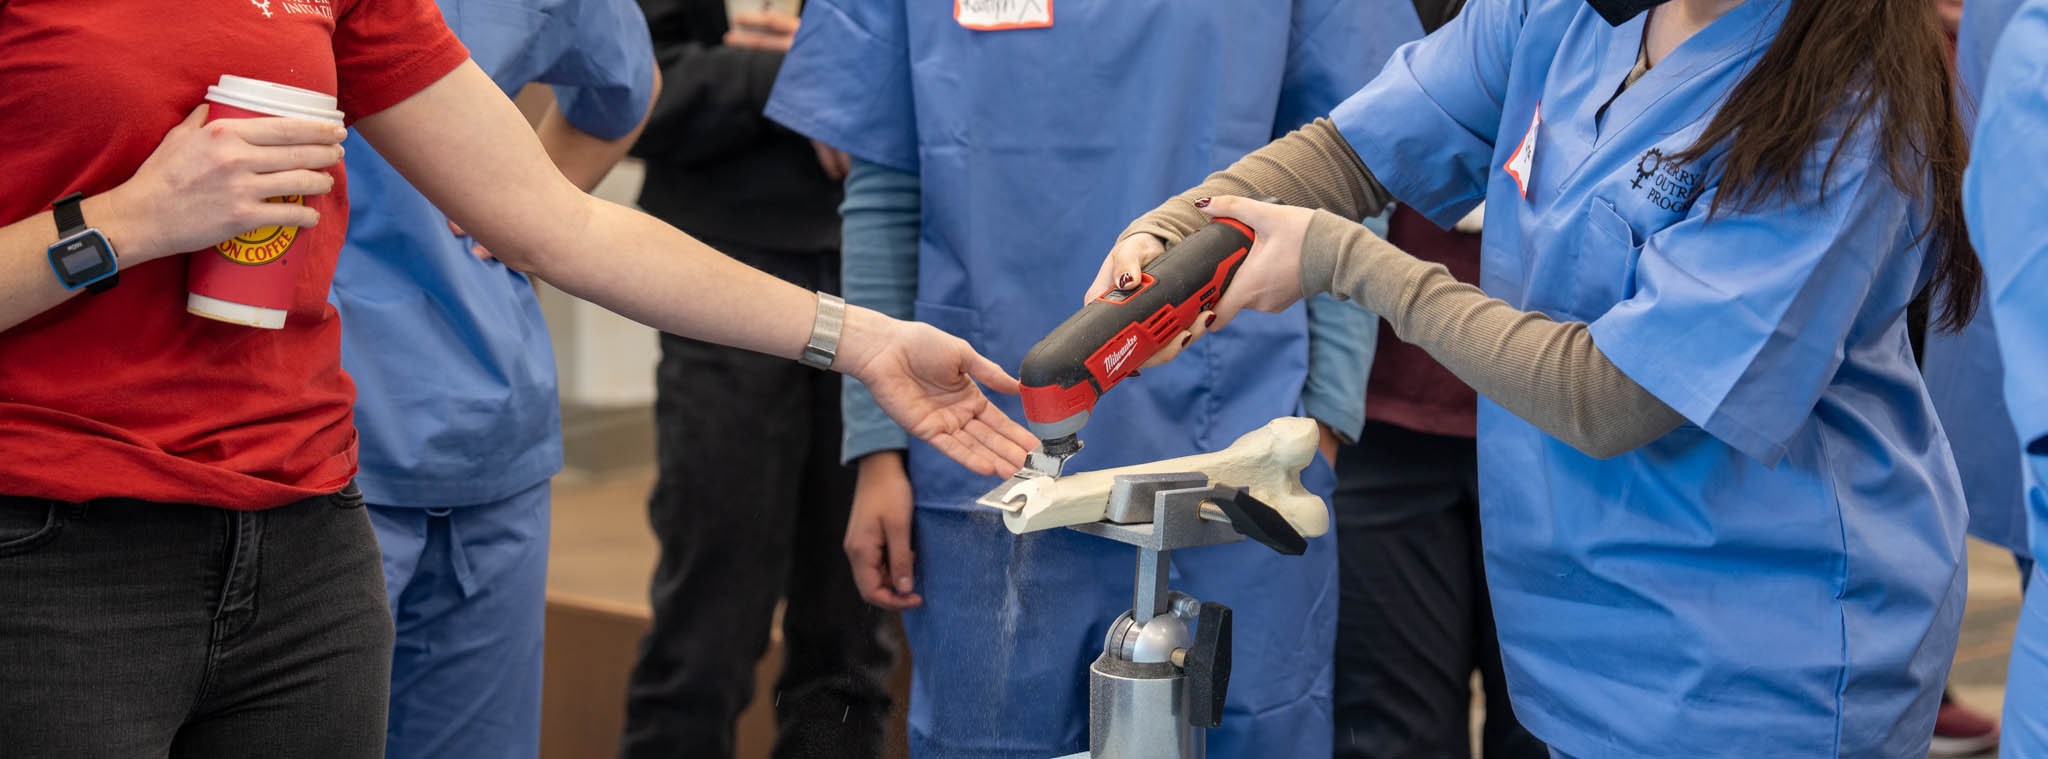 Estudiantes interactuando con una herramienta y una prótesis ósea